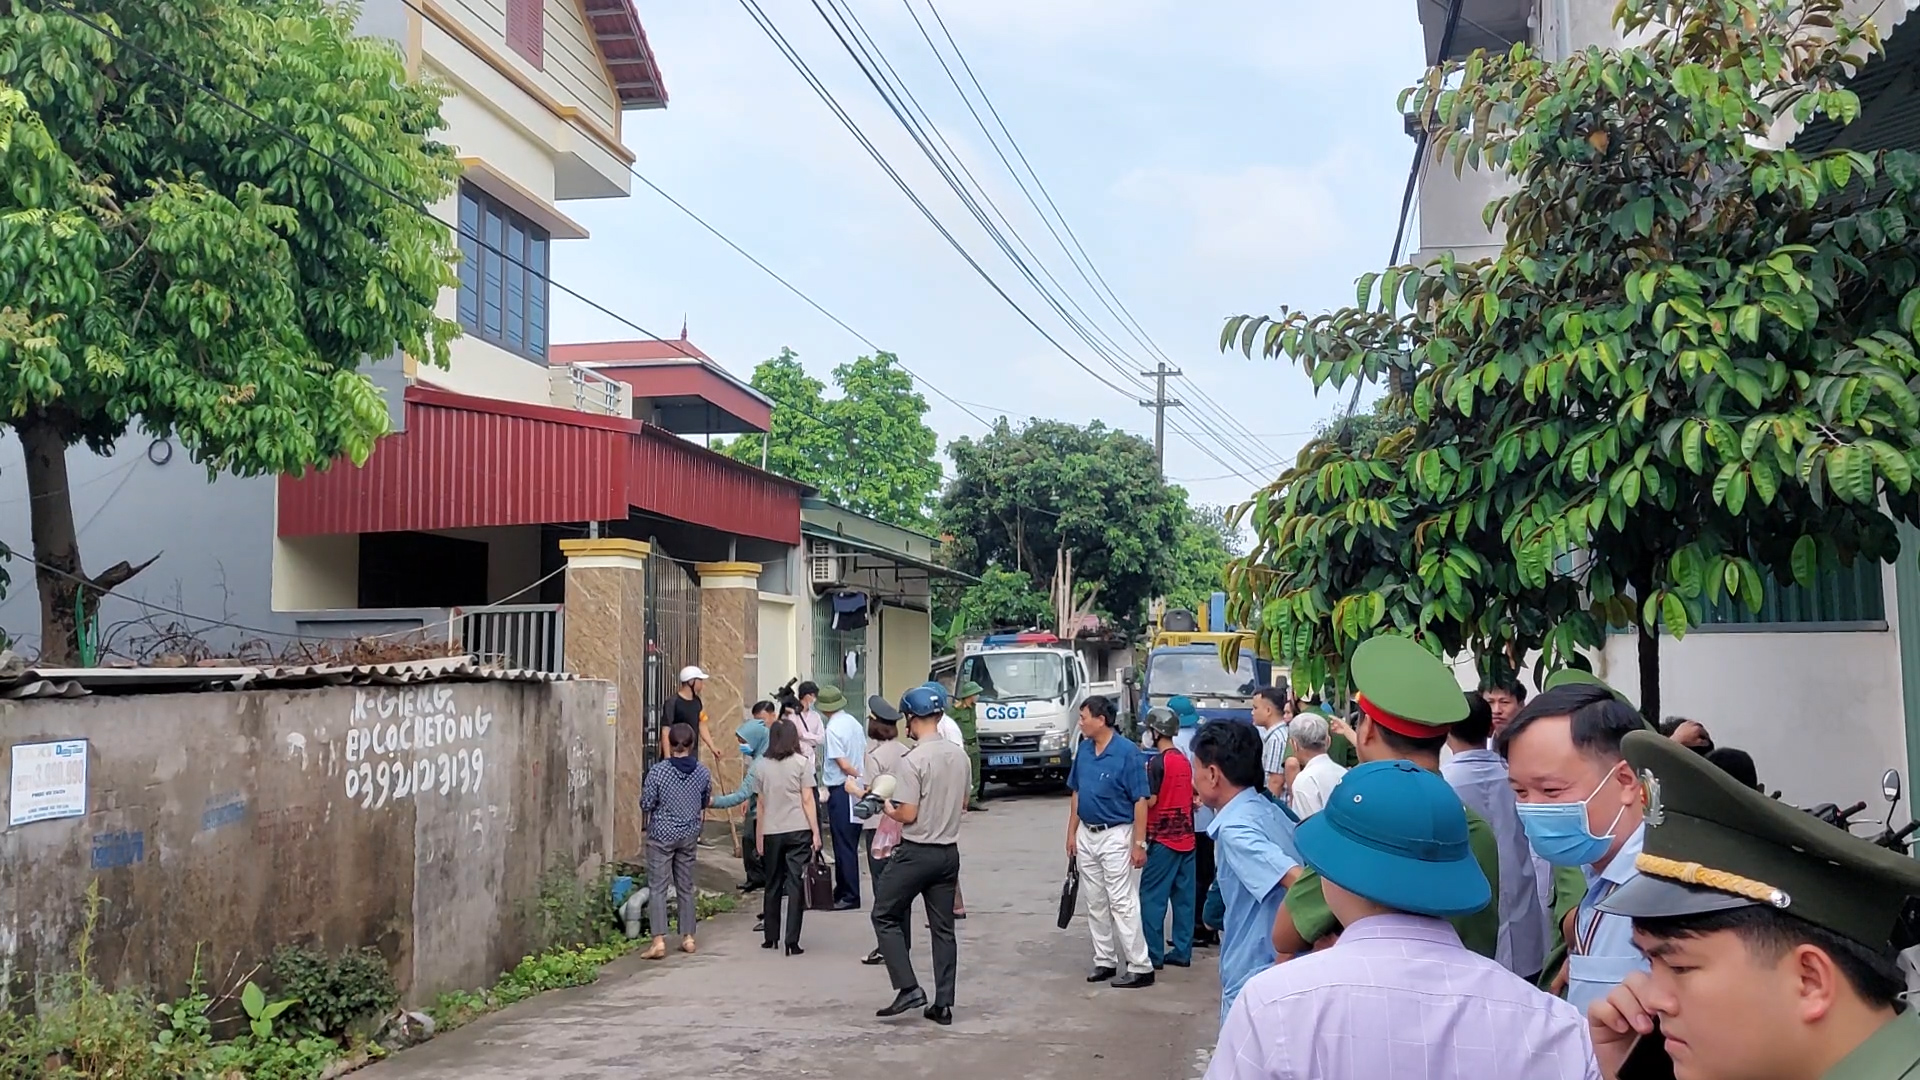 Chi cục Thi hành án dân sự huyện Văn Lâm tổ chức cưỡng chế thi hành án về việc chuyển giao quyền sử dụng đất tại thôn Hành Lạc, thị trấn Như Quỳnh